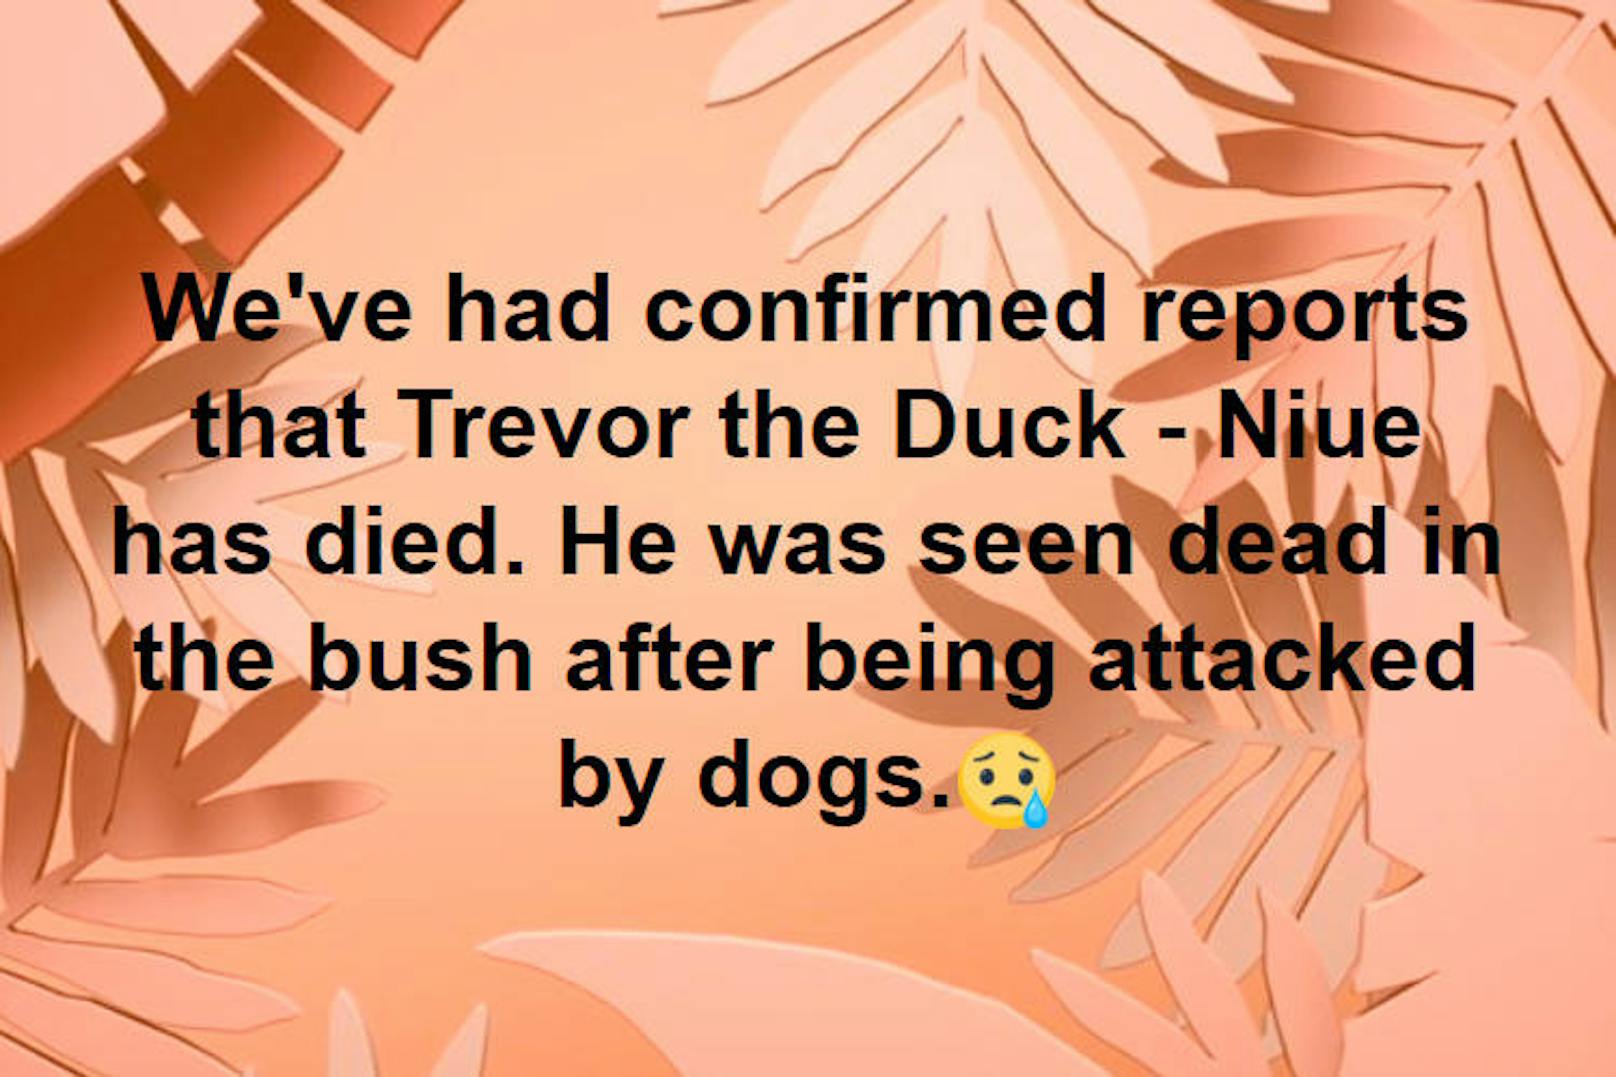 ... trauriges Ende. Nachdem er tagelang vermisst worden war, wurde Trevors Leiche in einem Gebüsch gefunden. Der Erpel war in Folge einer Hundeattacke verstorben.